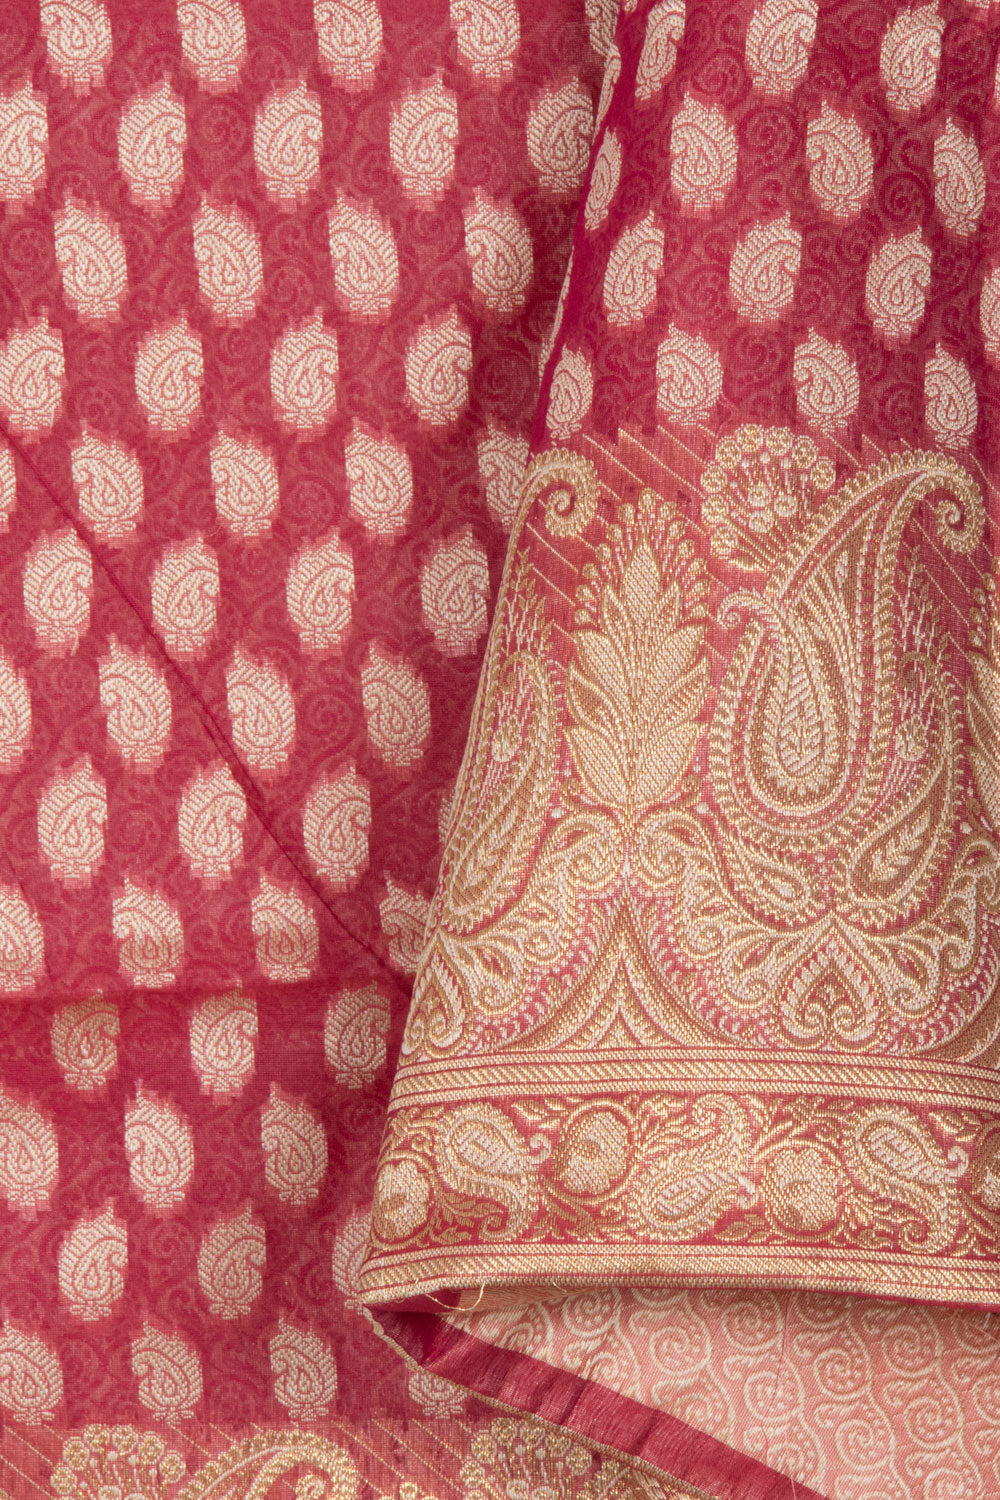 Amaranth Pink Banarasi Cotton Salwar Suit Material 10061166